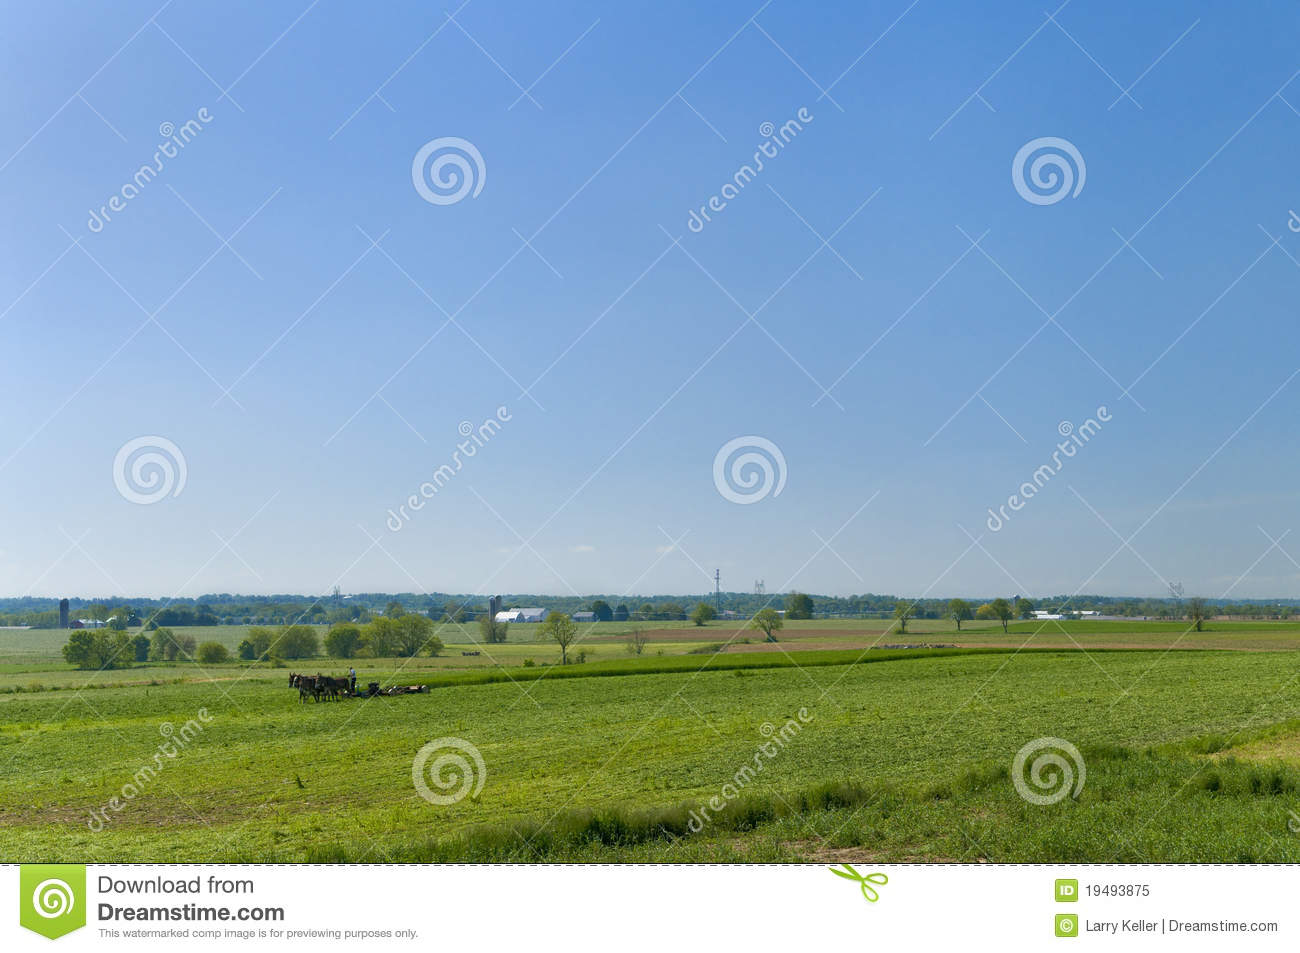 Amish Farm Landscape Royalty Free Stock Photo   Image  19493875